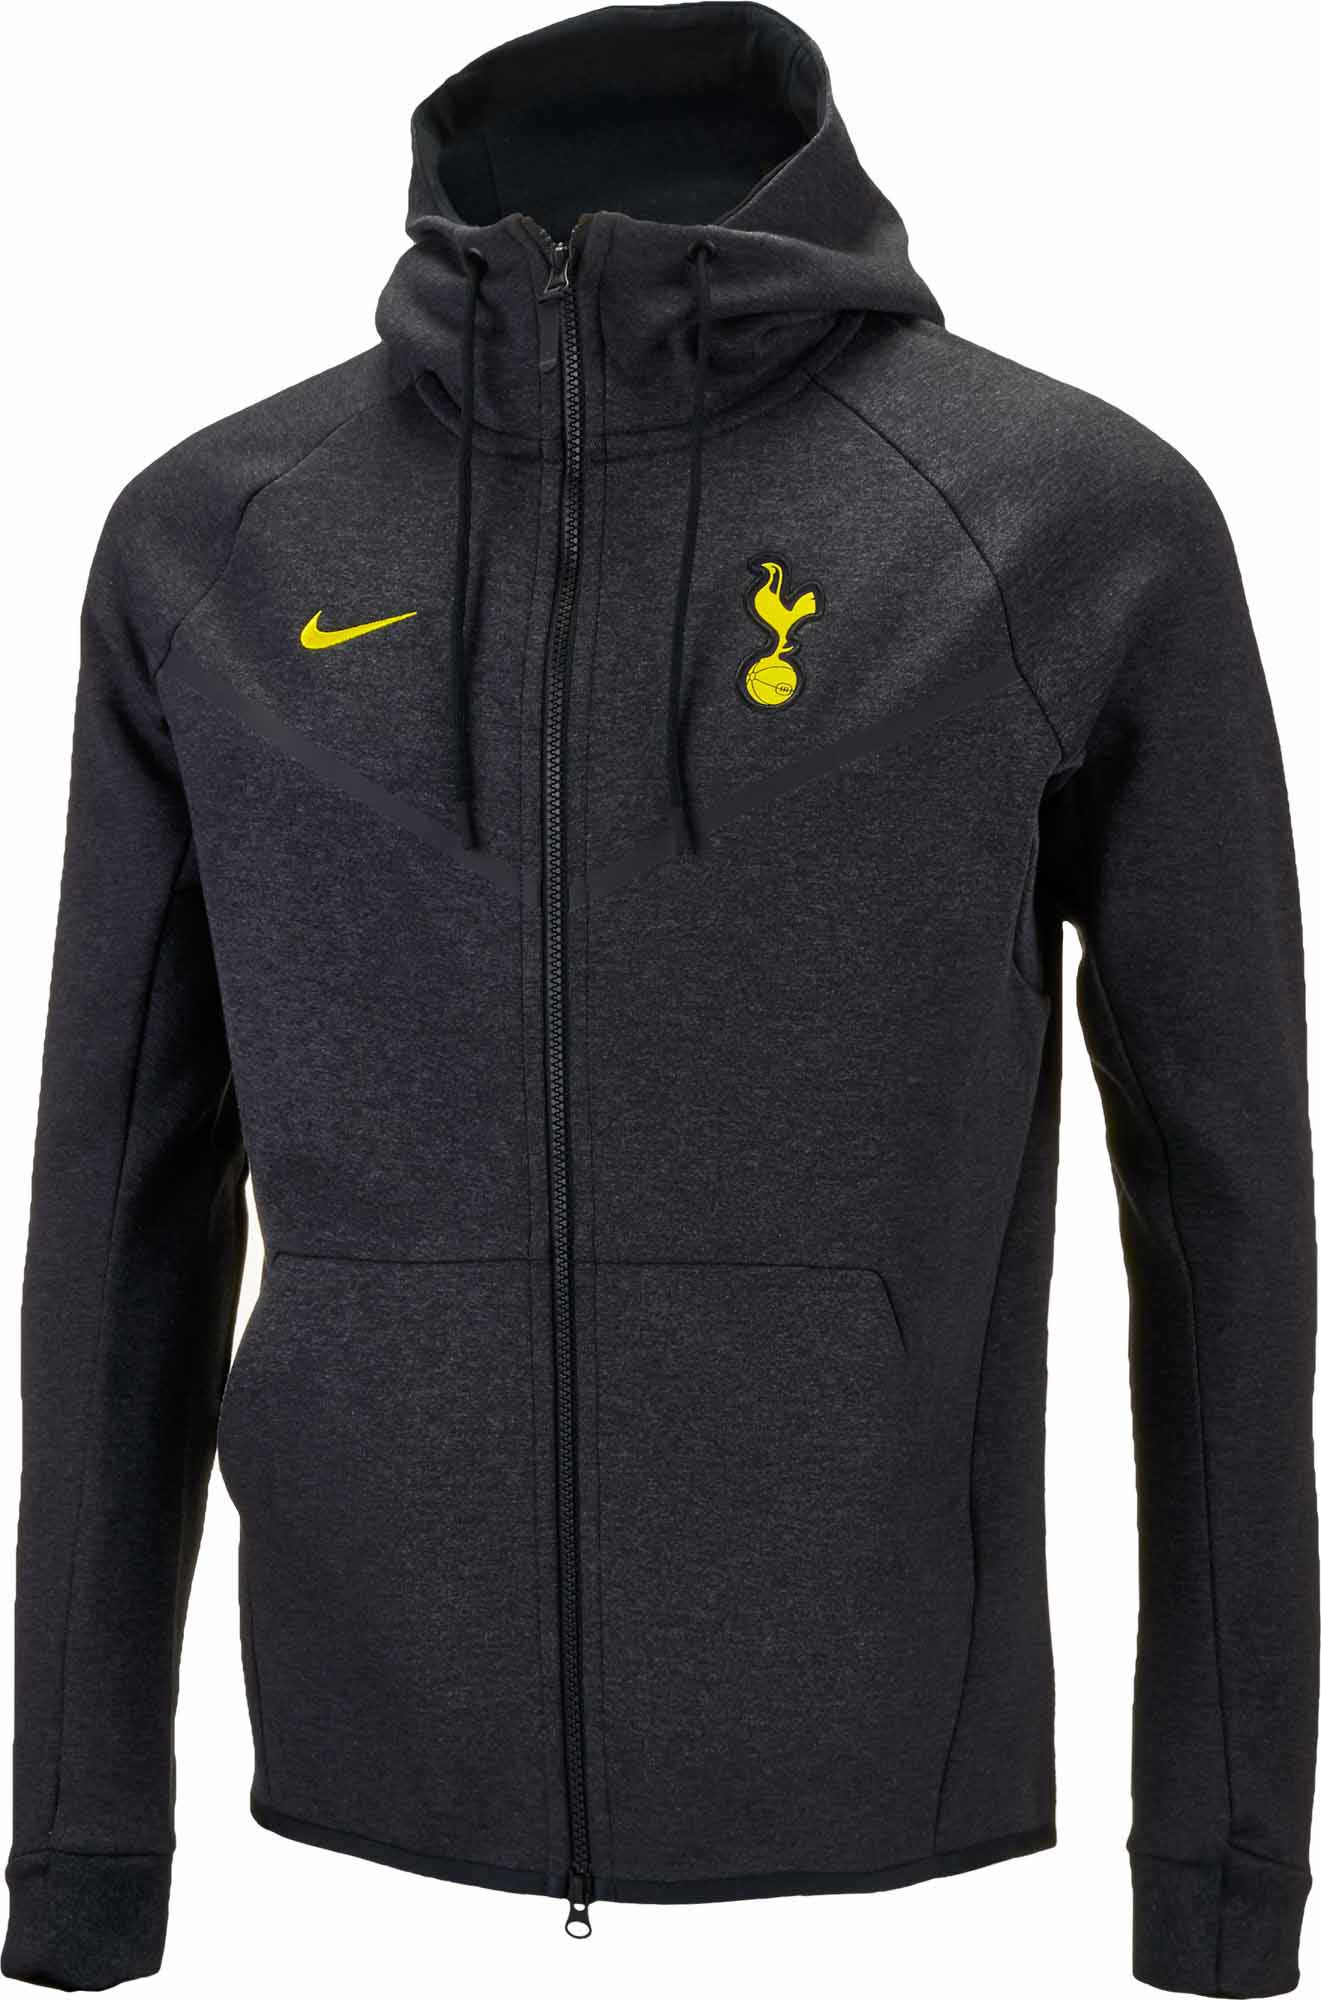 redactioneel veelbelovend Immuniteit Nike Tottenham Tech Fleece Windrunner Jacket - Black Heather & Opti Yellow